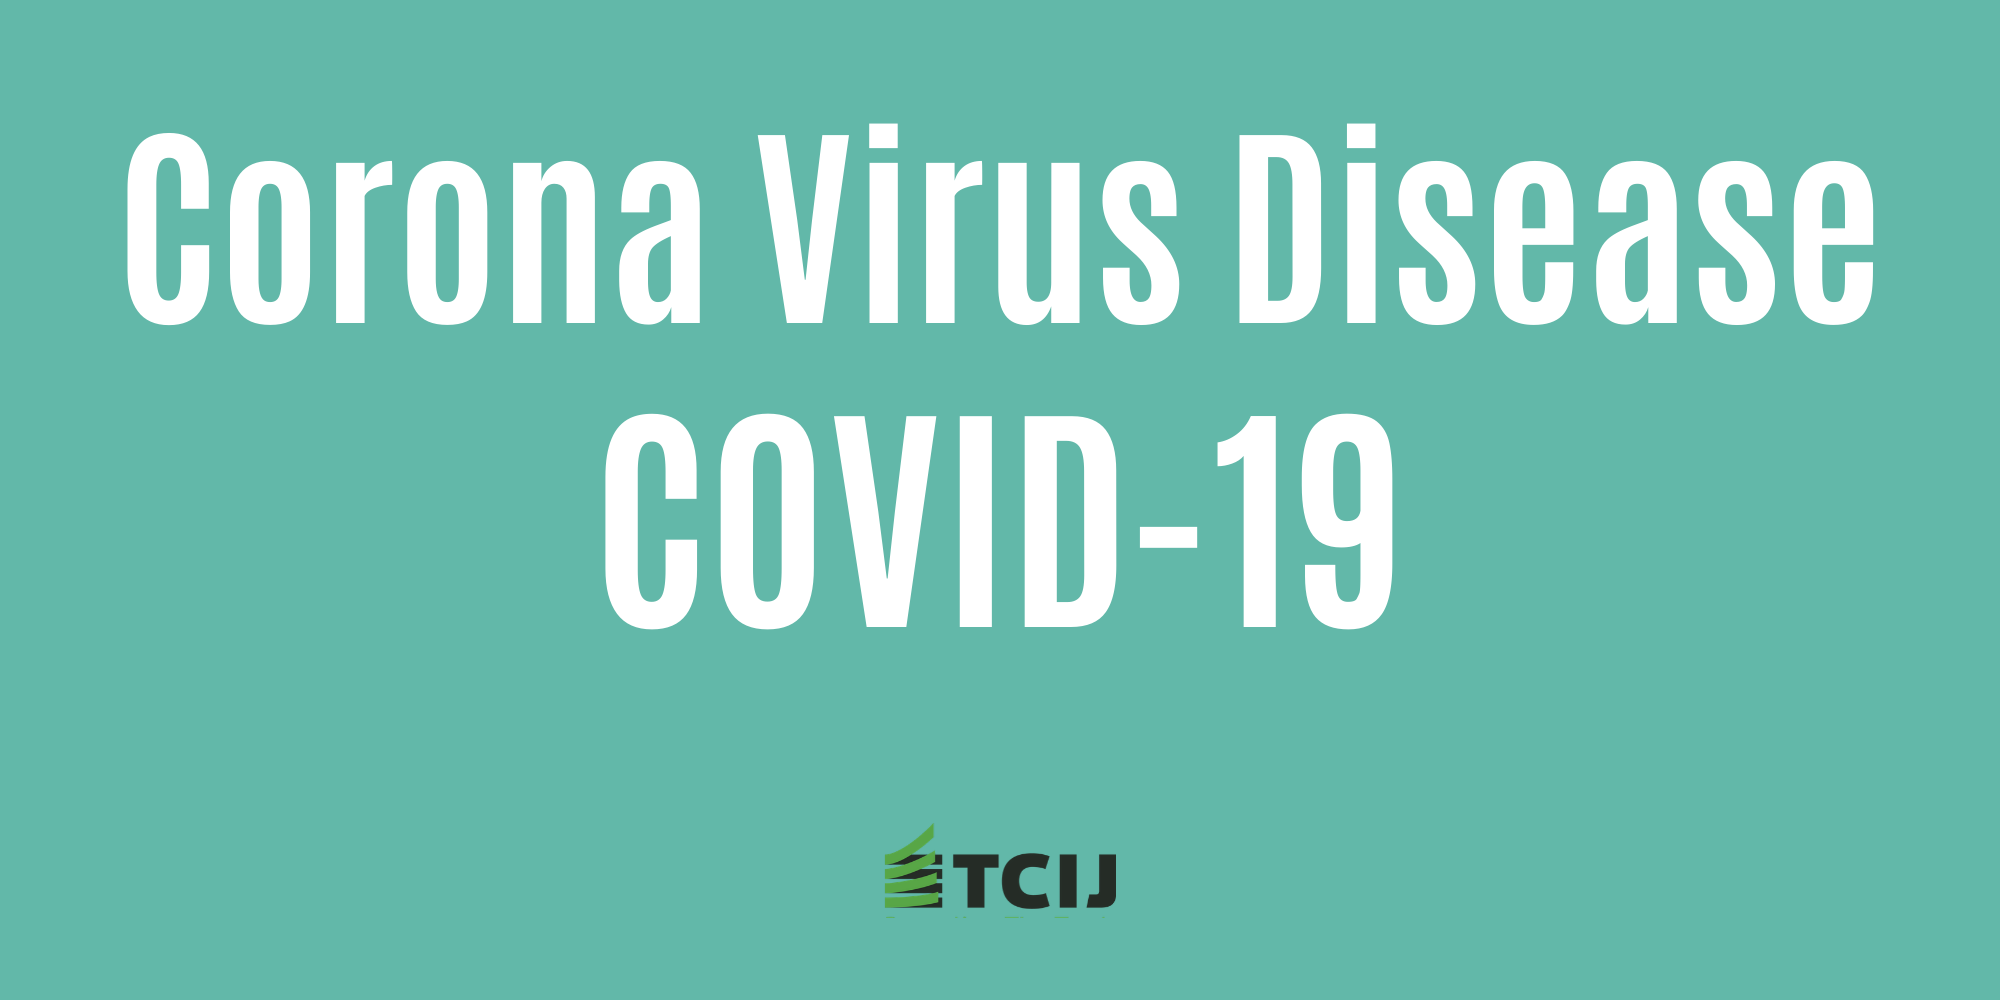 13 มี.ค. สธ.แถลงยืนยันพบผู้ป่วยติดเชื้อ COVID-19 เพิ่มอีก 5 คน ผู้ป่วยสะสม 75 คน